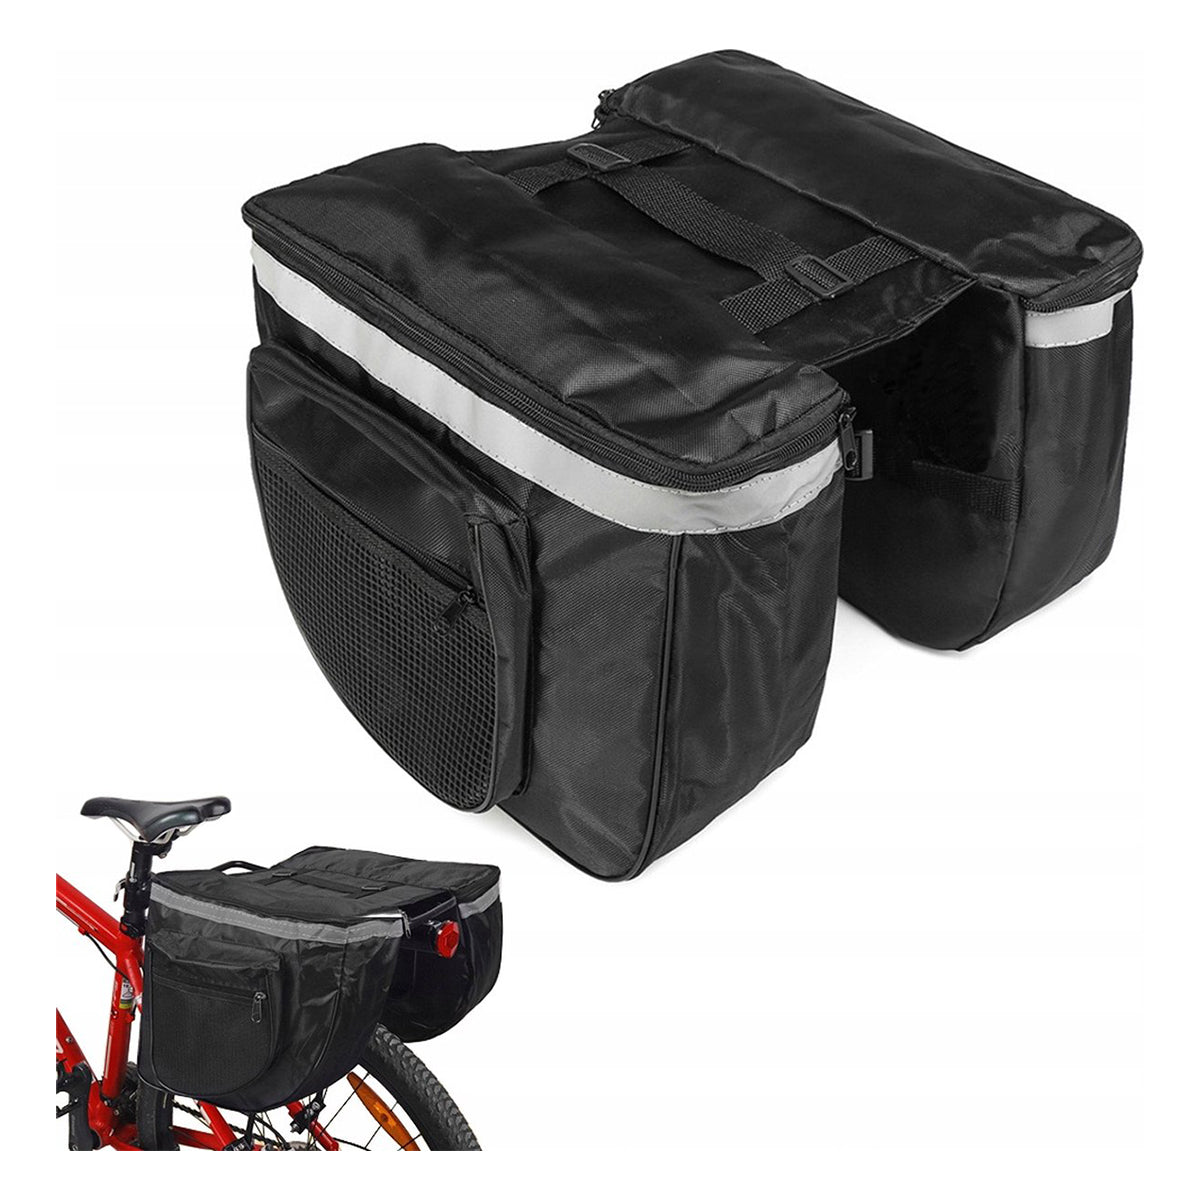 Luxus-Doppelgepäckträgertasche – Fahrradtasche – Große doppelte abnehmbare Gepäckträgertasche – Trunkbag – wasserdicht – Bikepacking-Taschenhalter – Trunkbag mit 4 Fächern – 28 Liter Stauraum – Schwarz